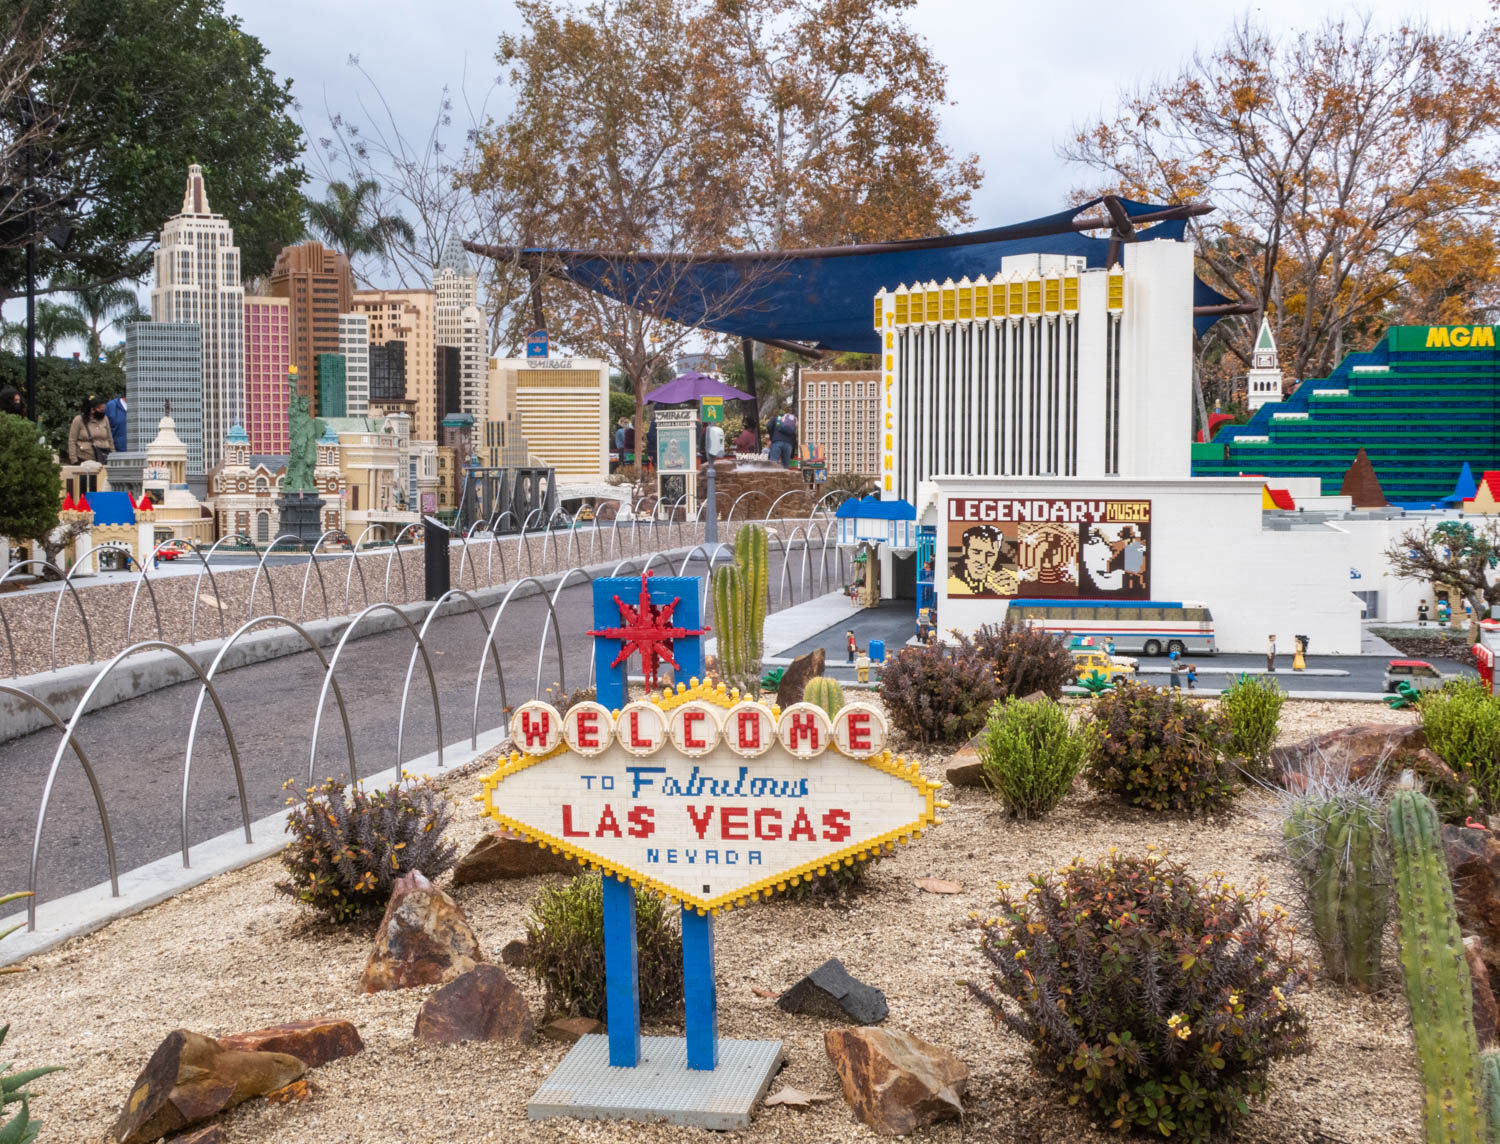 LEGO® Iconic Brick Ice Cube Tray -Pink – LEGOLAND® California Resort Online  Shop